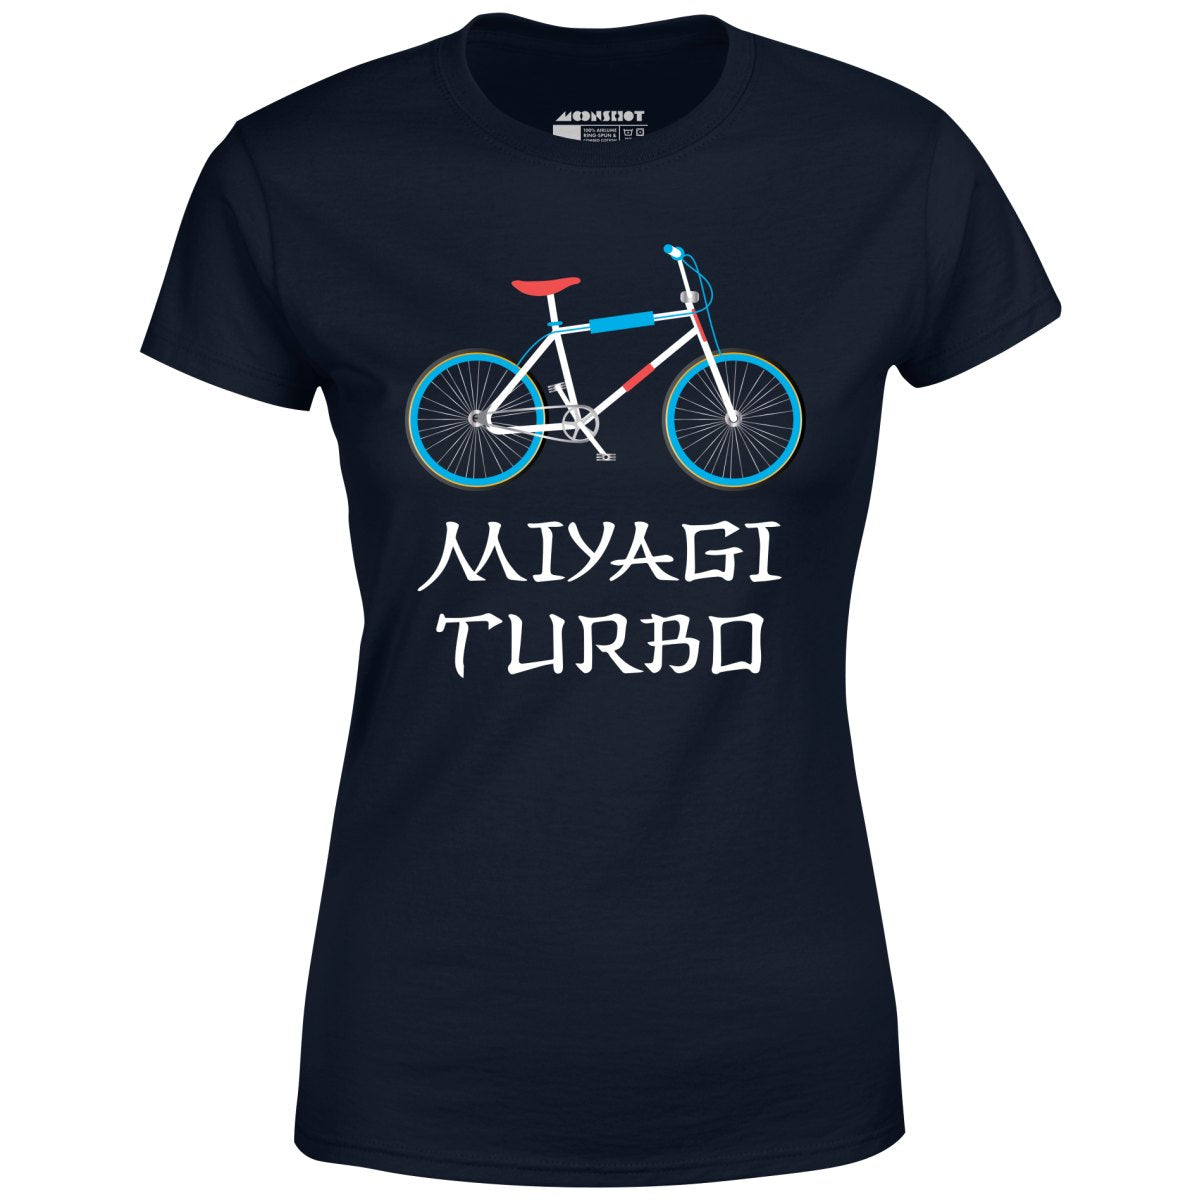 Miyagi Turbo - Women's T-Shirt